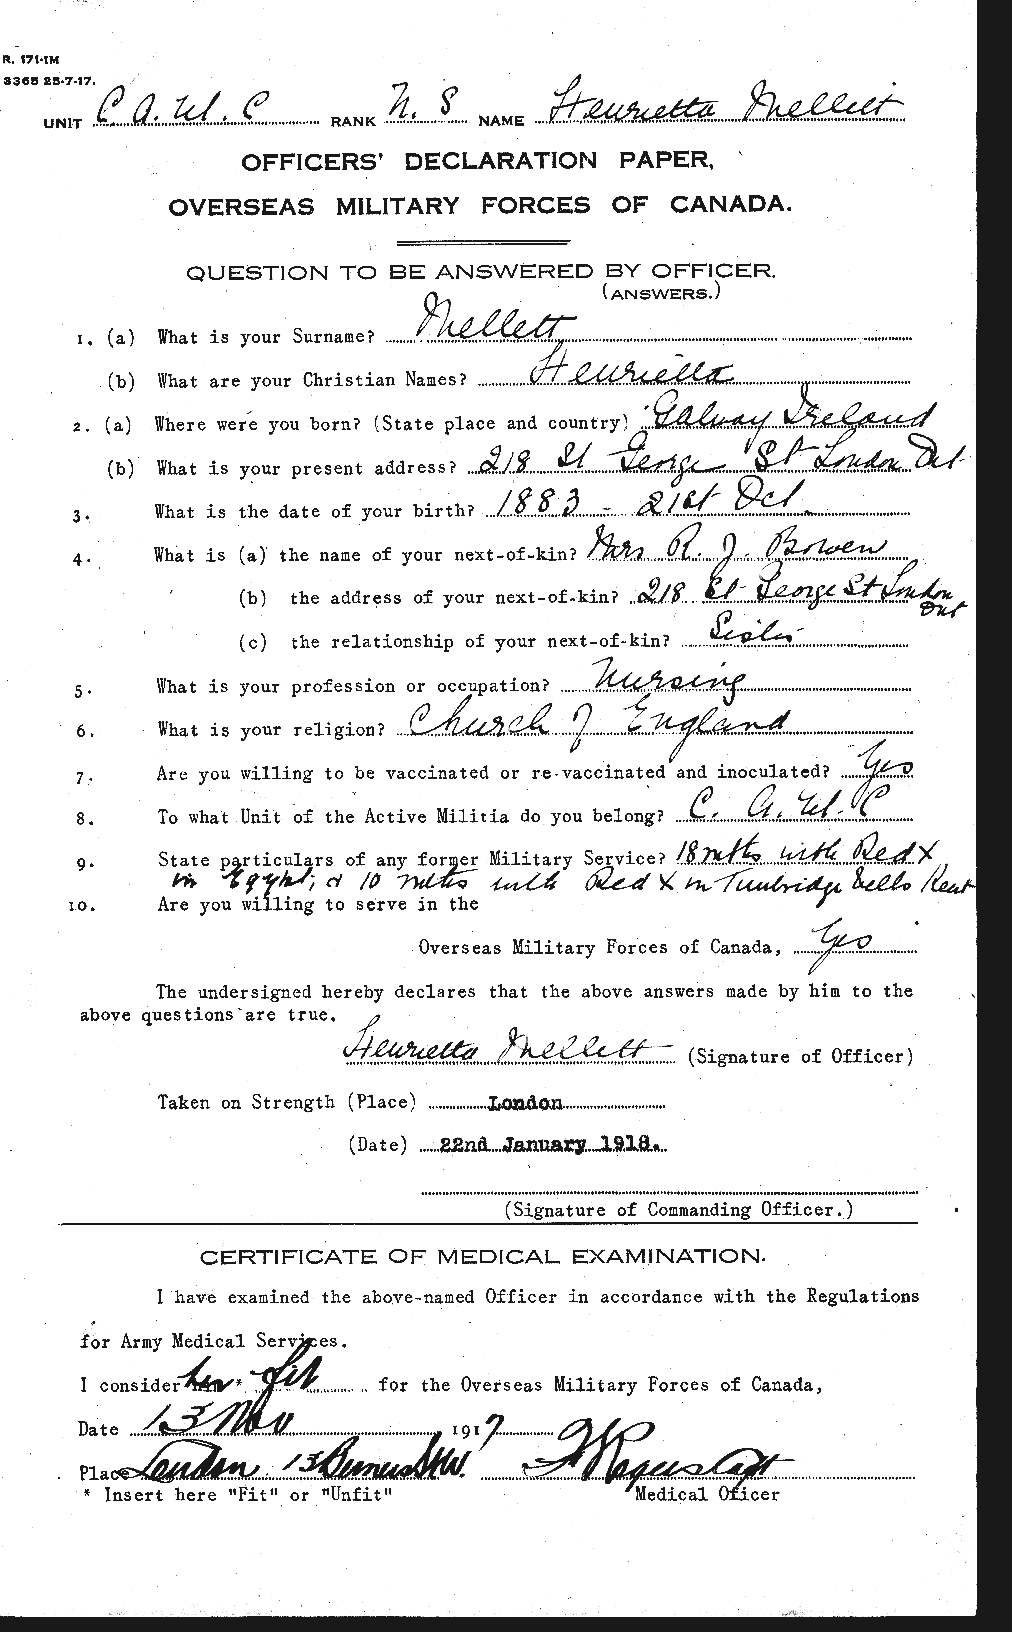 Dossiers du Personnel de la Première Guerre mondiale - CEC 237302a